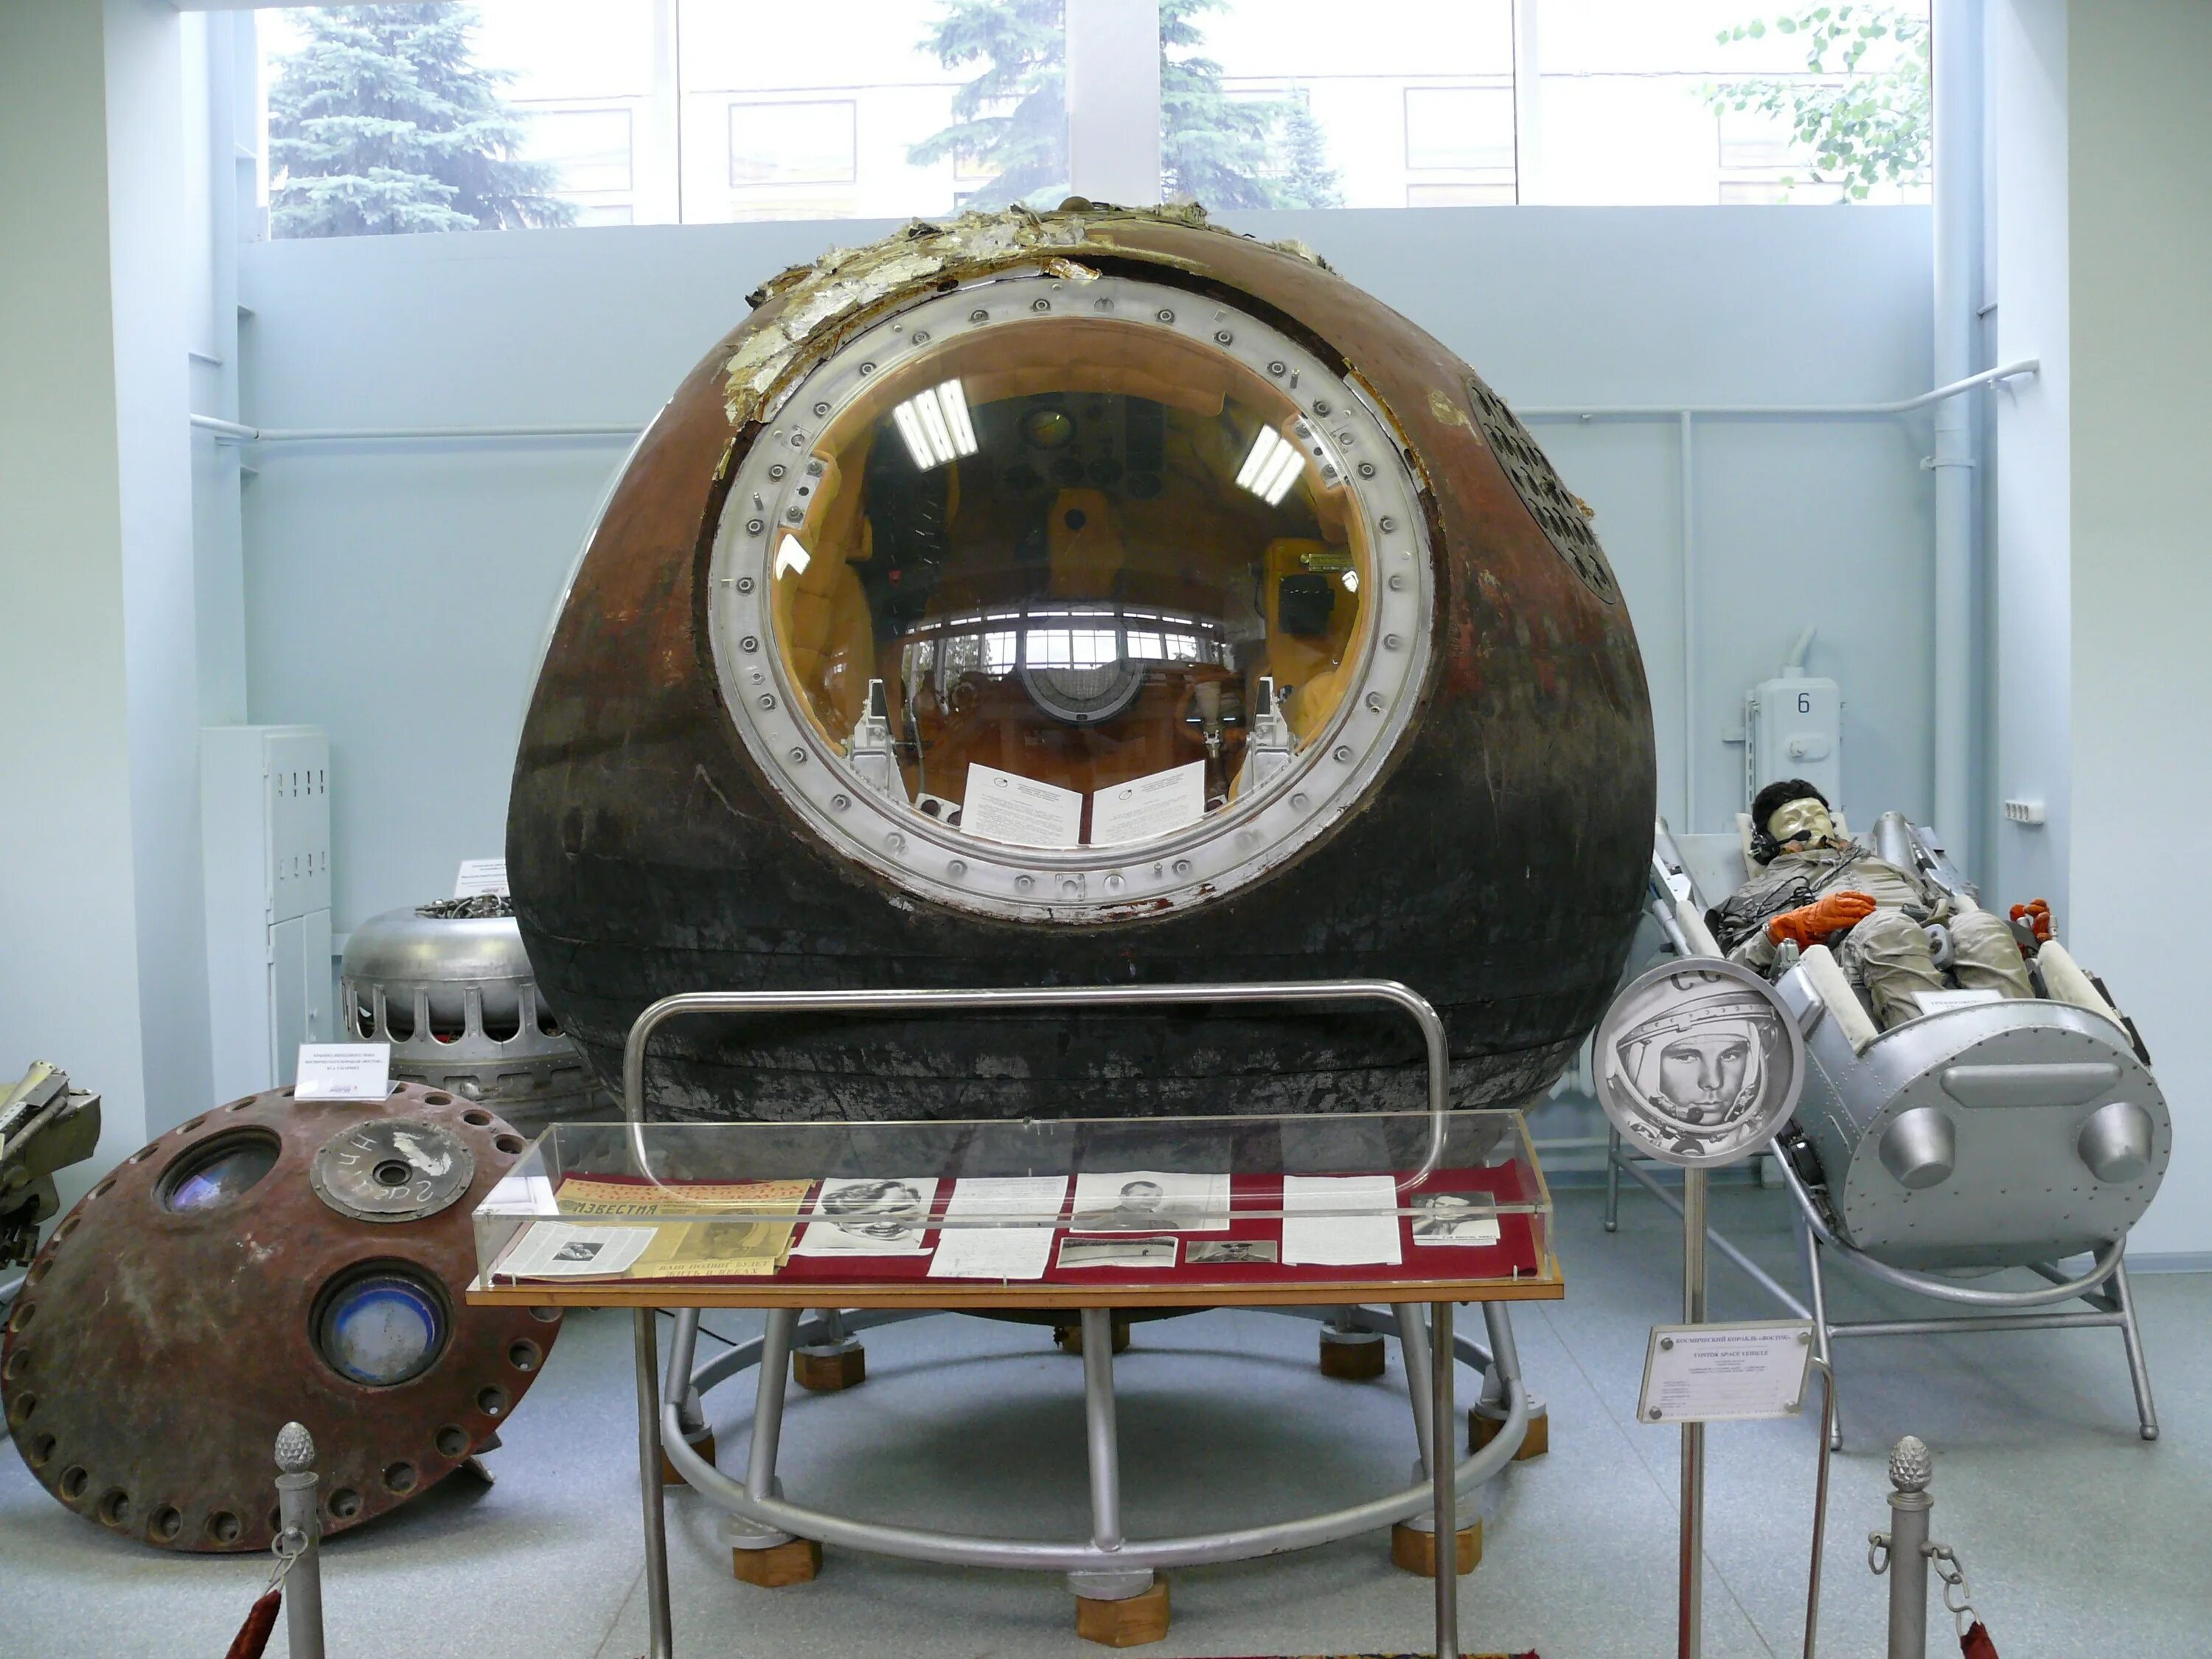 Первый космический аппарат поднявший человека. Спускаемый аппарат Восток 1 Гагарина. Спускаемый аппарат корабля «Восток-1». Капсула Гагарина Восток-1. Спускаемый аппарат корабля «Восток 3ka-2».